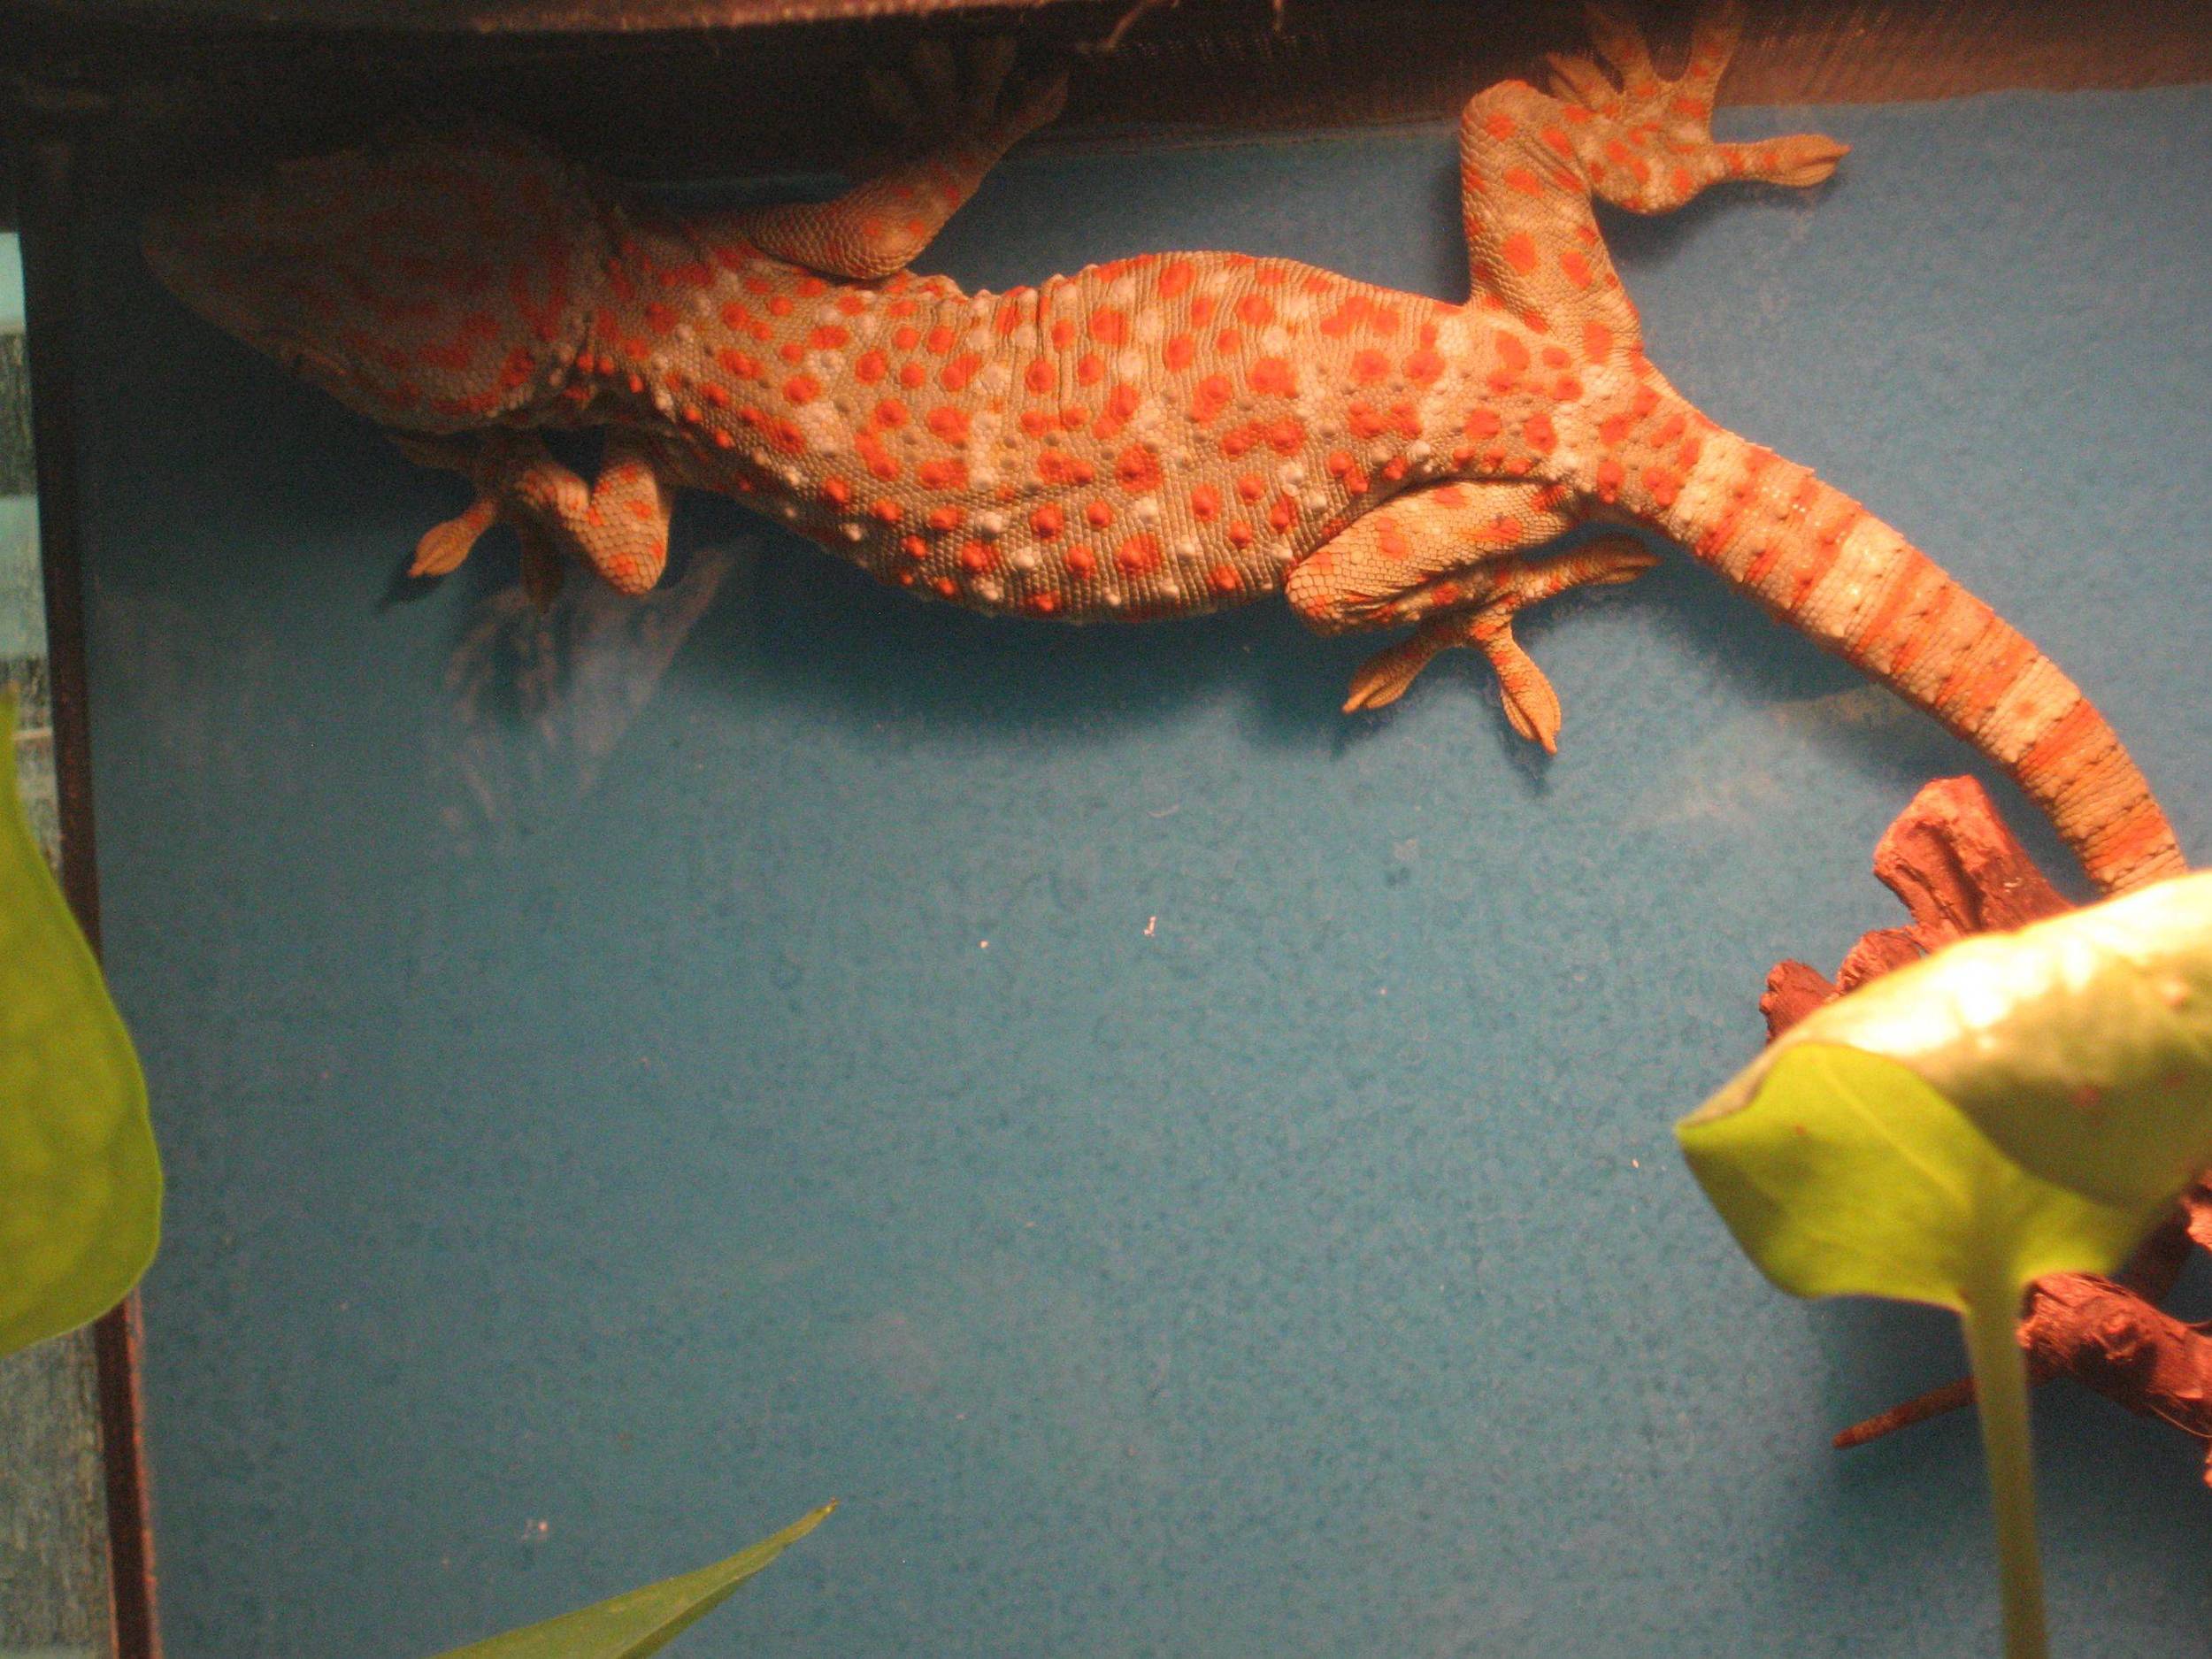 03 - Tokay Gecko.jpg